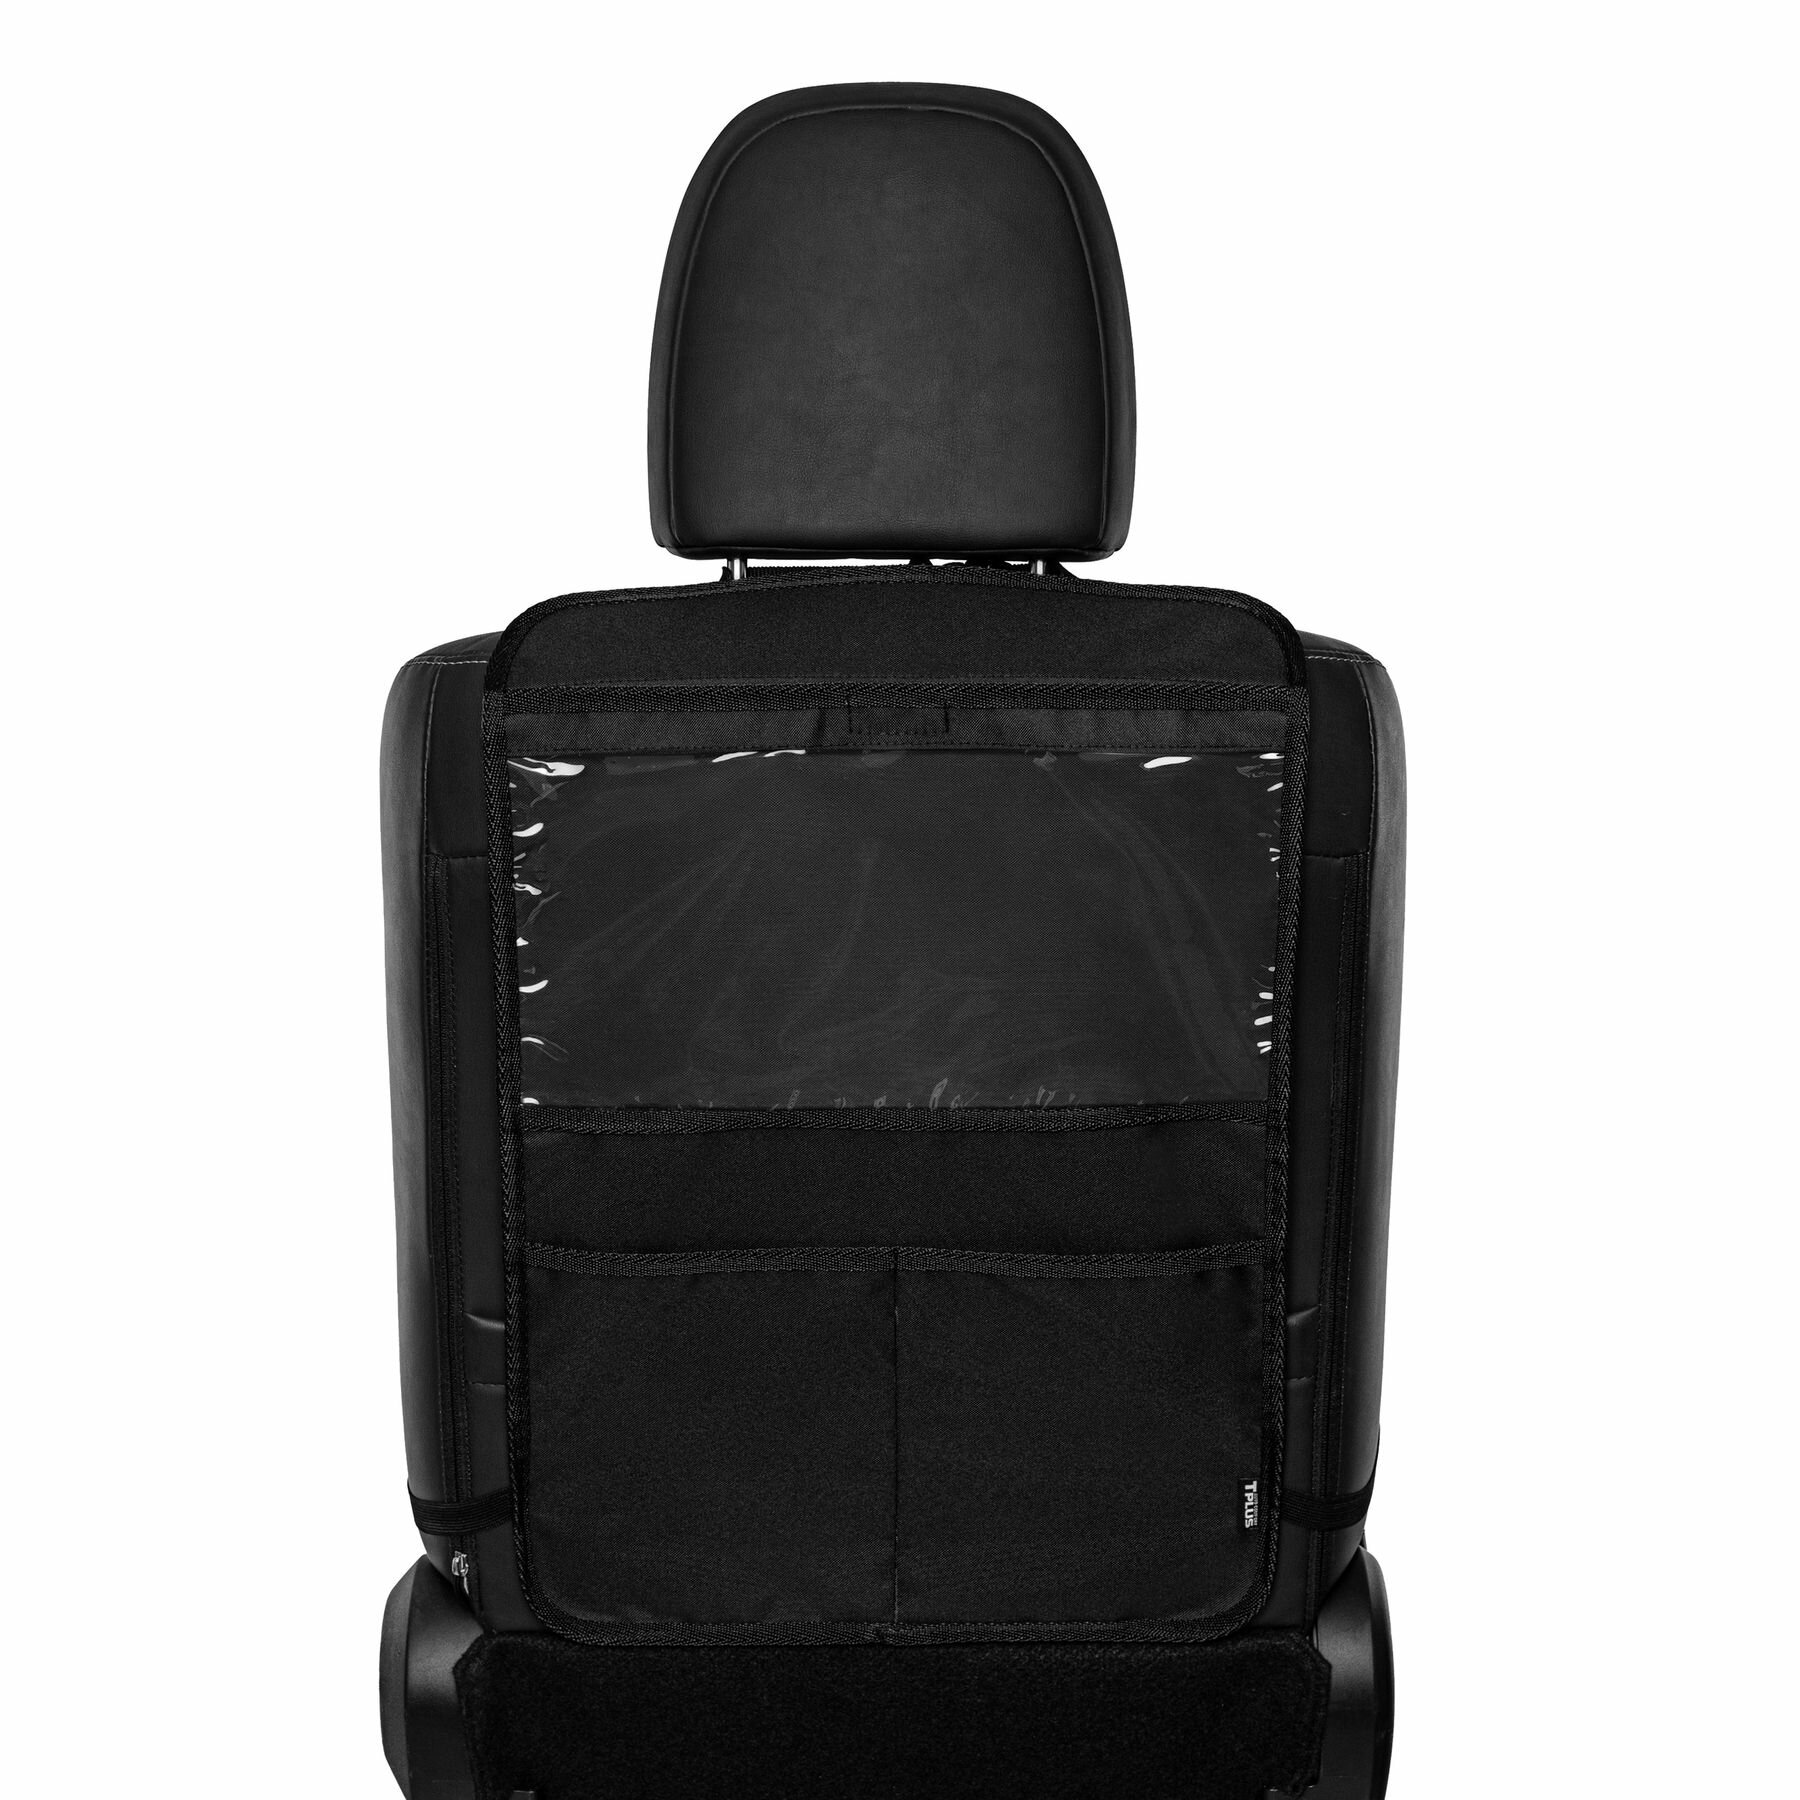 Органайзер на спинку сиденья автомобиля с 3 карманами, накидка на сидение для хранения вещей, подвесной автоорганайзер 400x600 мм, чёрный, Tplus